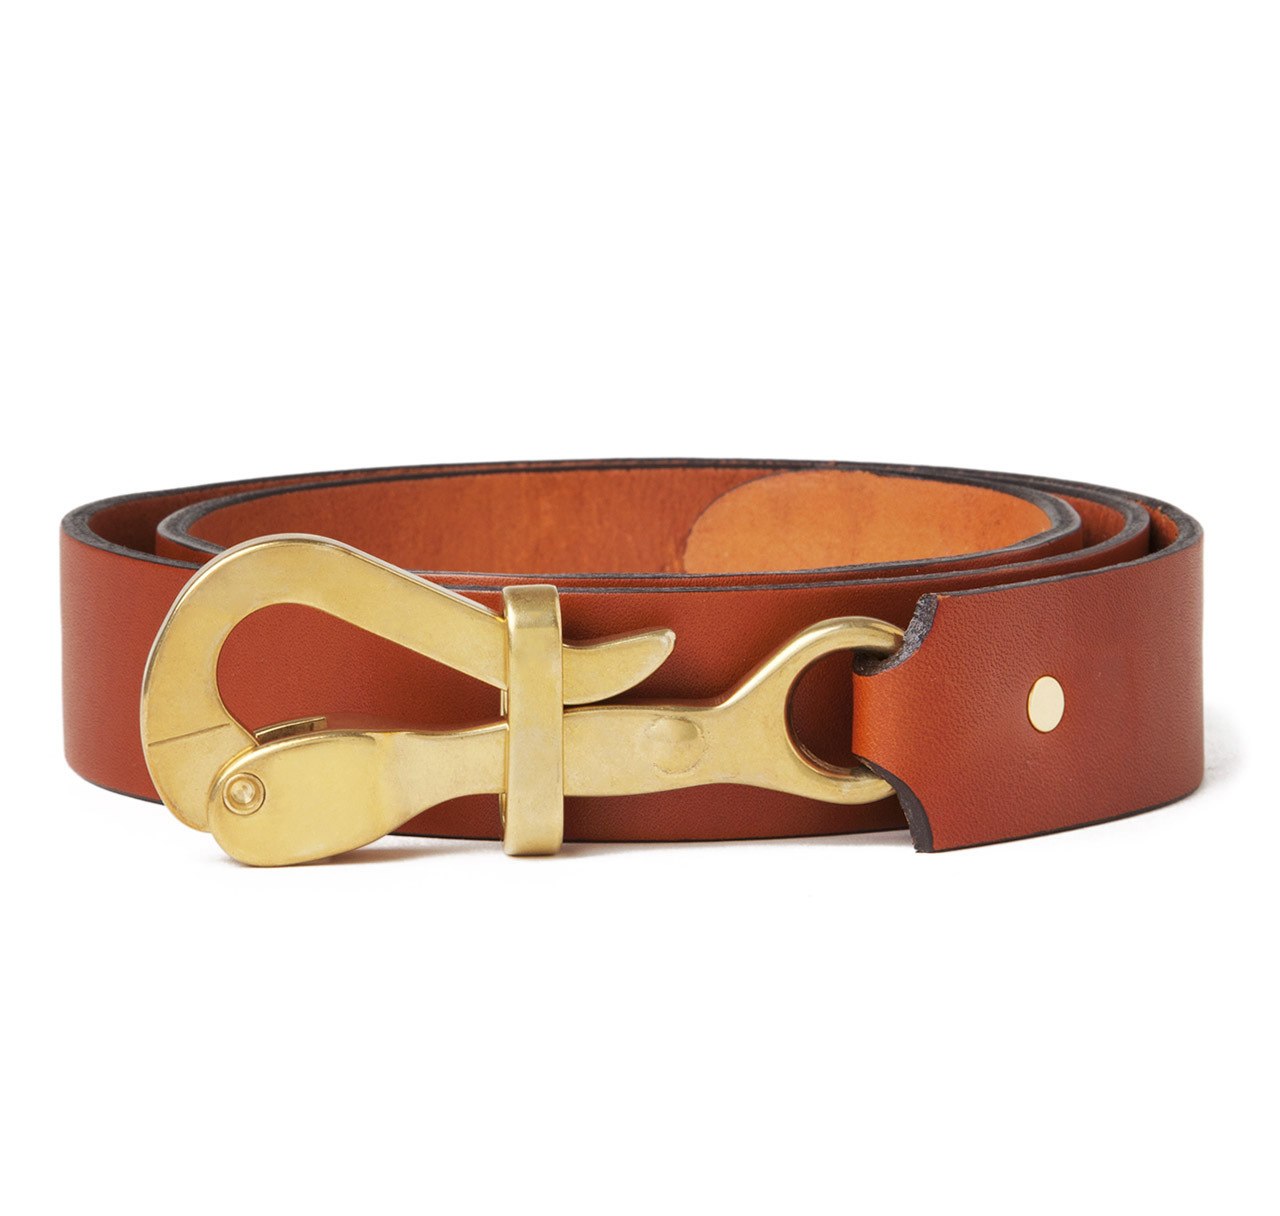 Sir Jack's Pelican Hook Belt in Tan Leather